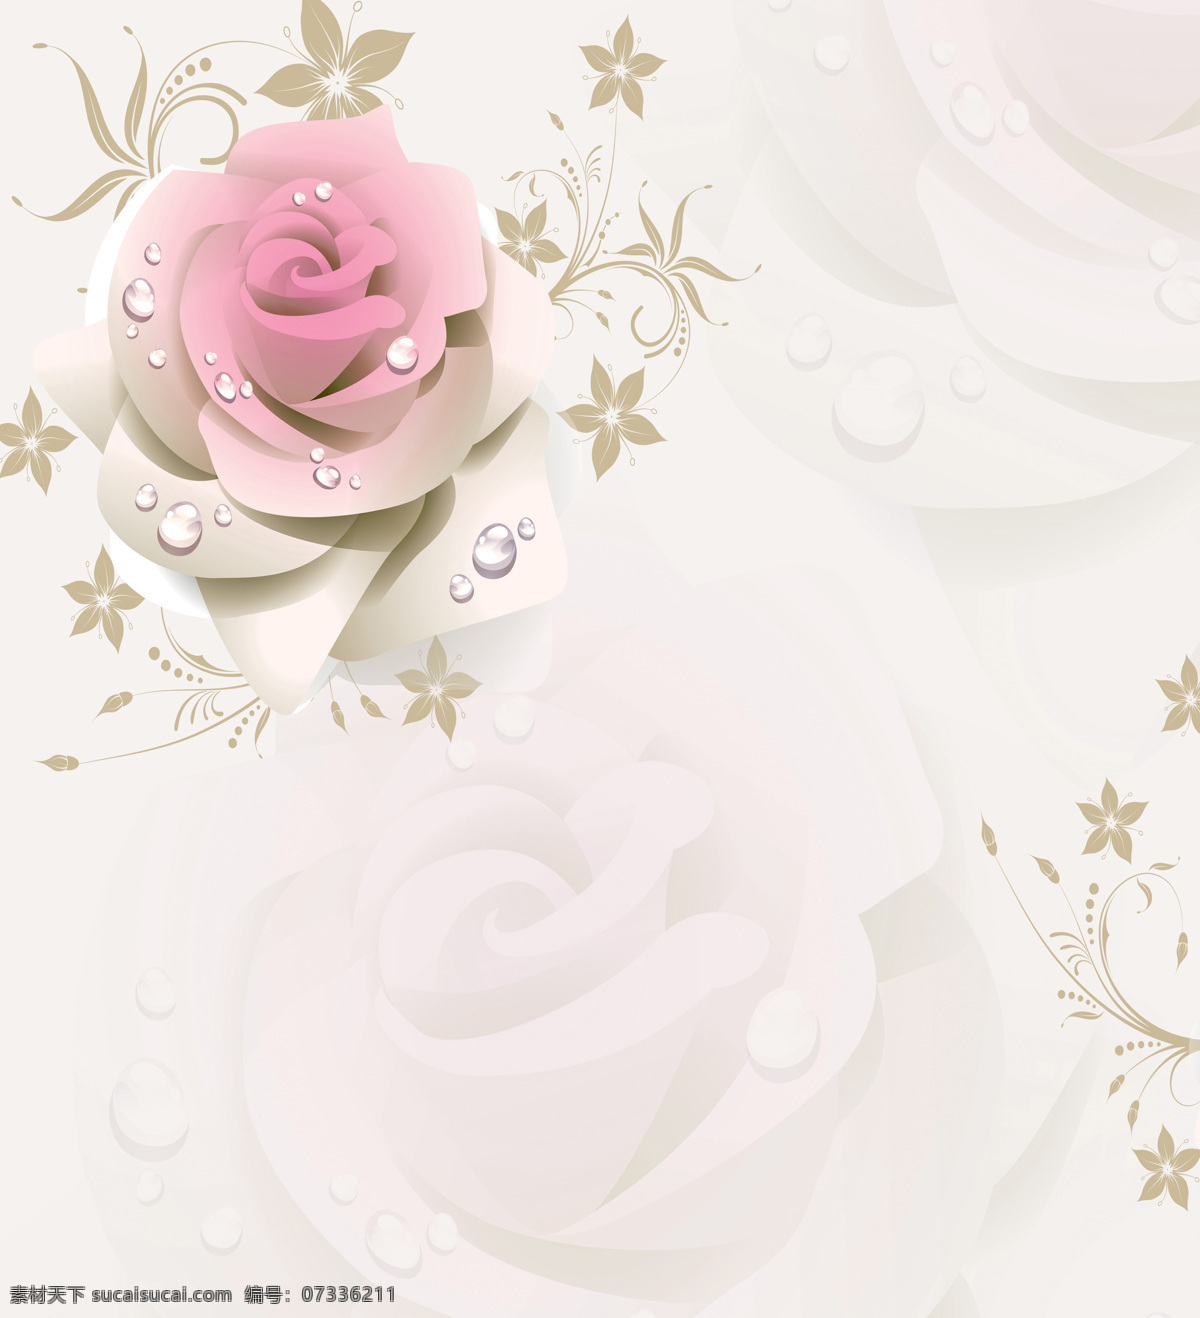 室内 移门 创意 画 露水 中 玫瑰 3d渲染 效果图下载 移门画 创意画 玫瑰花